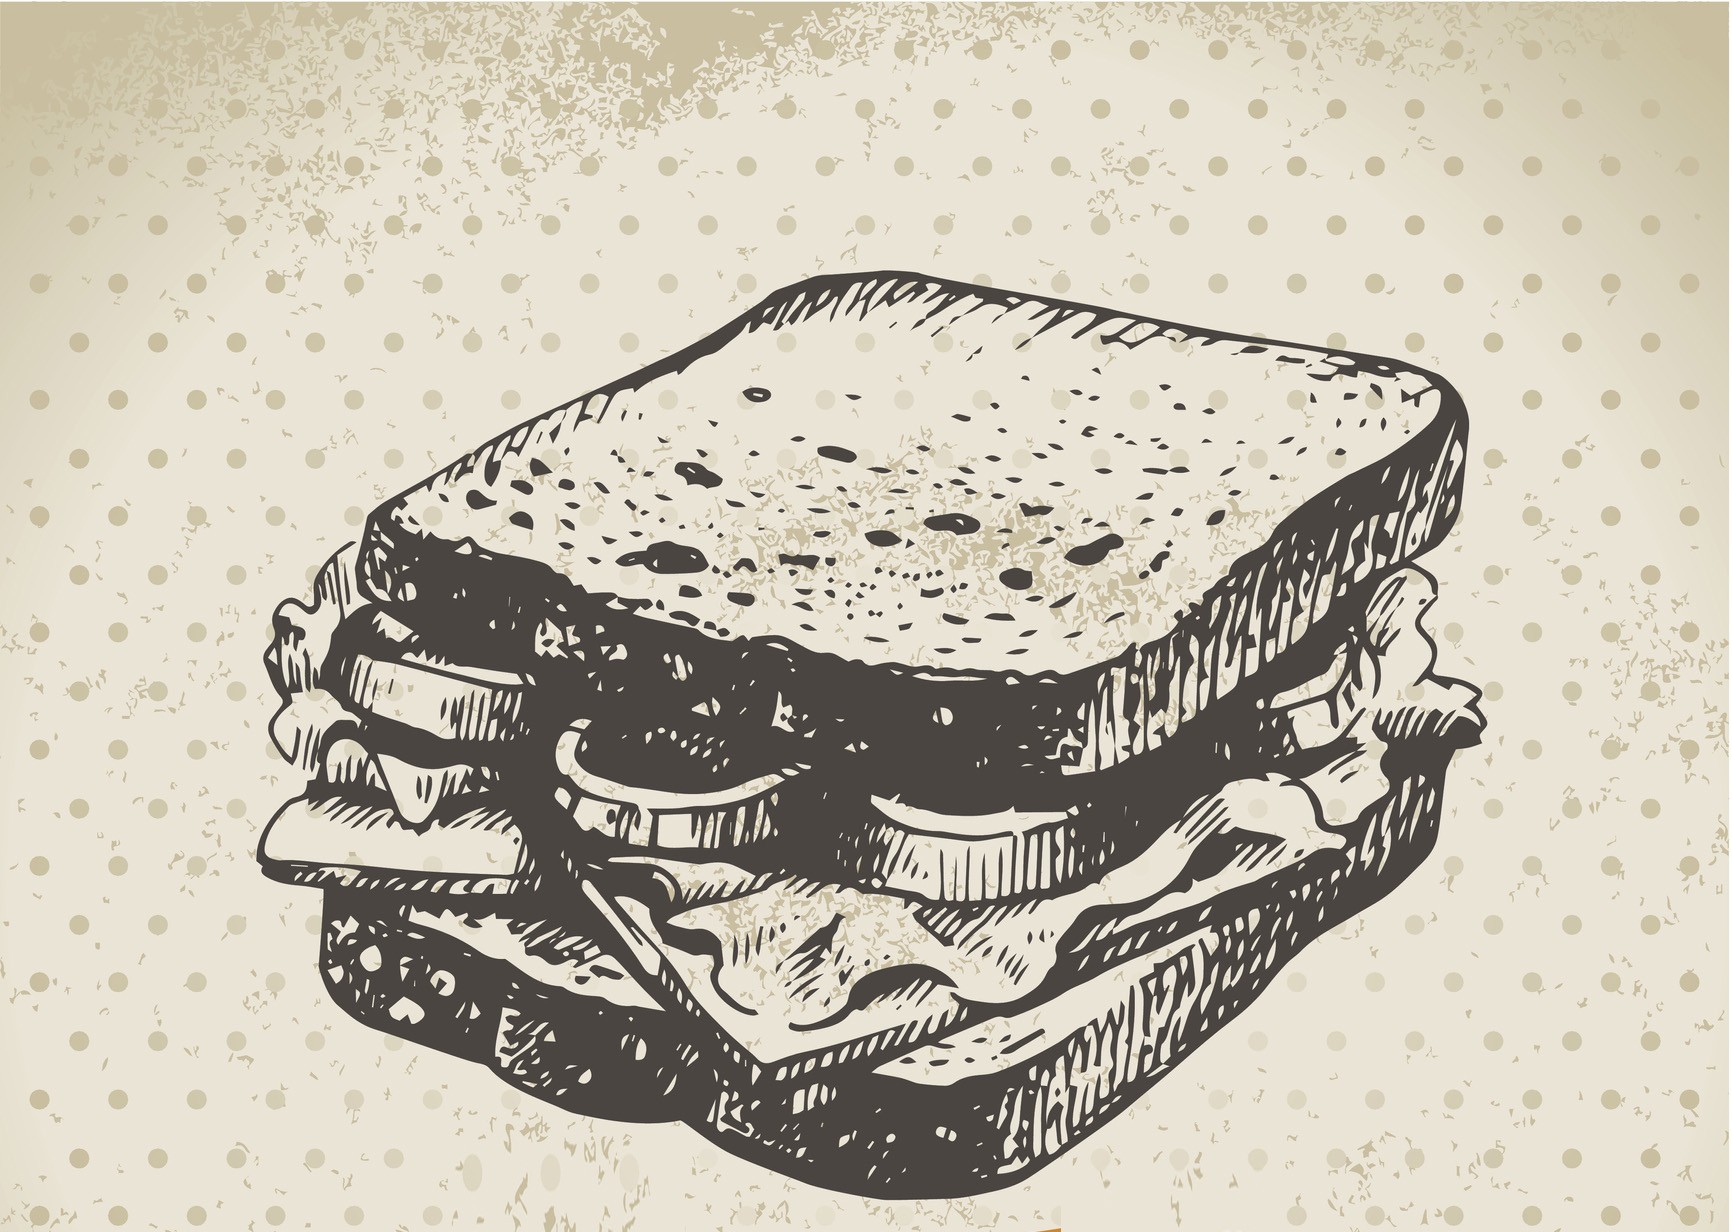 Va ser el sandvitx el primer entrepà de la història?